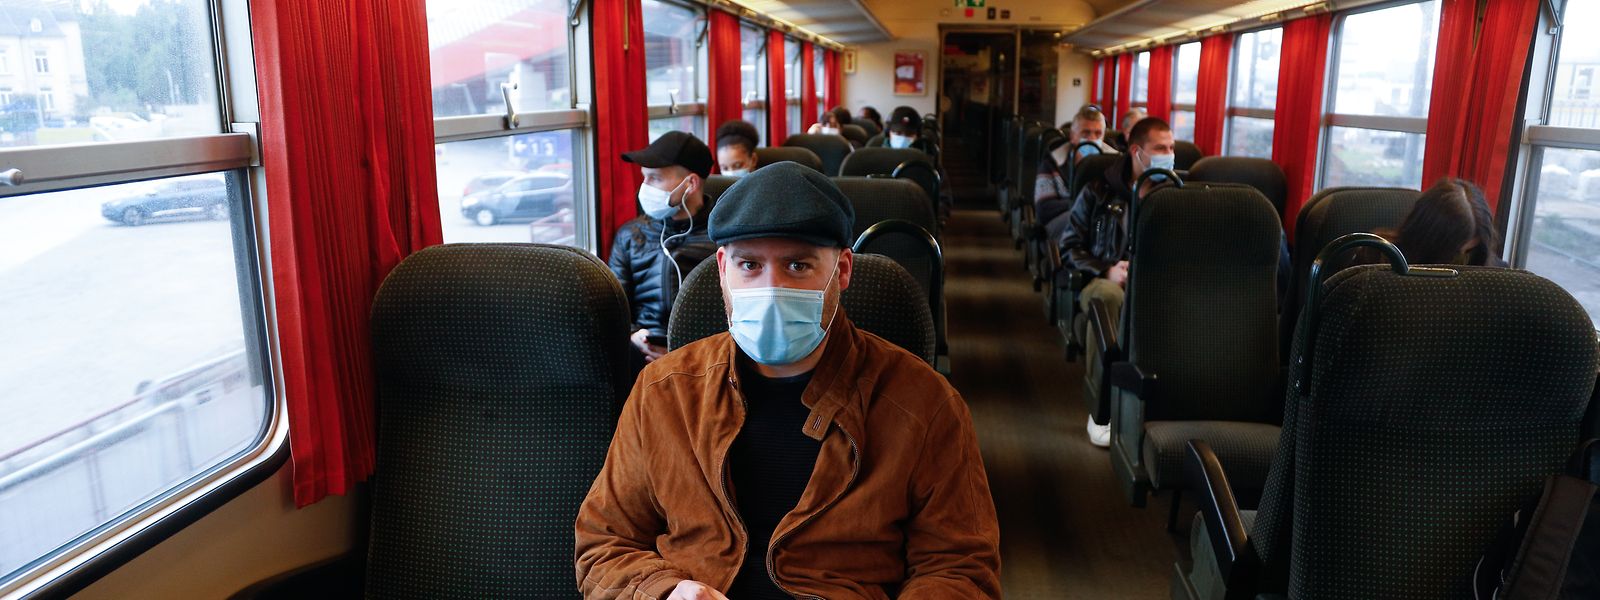 Le port du masque reste obligatoire dans les transports en commun.